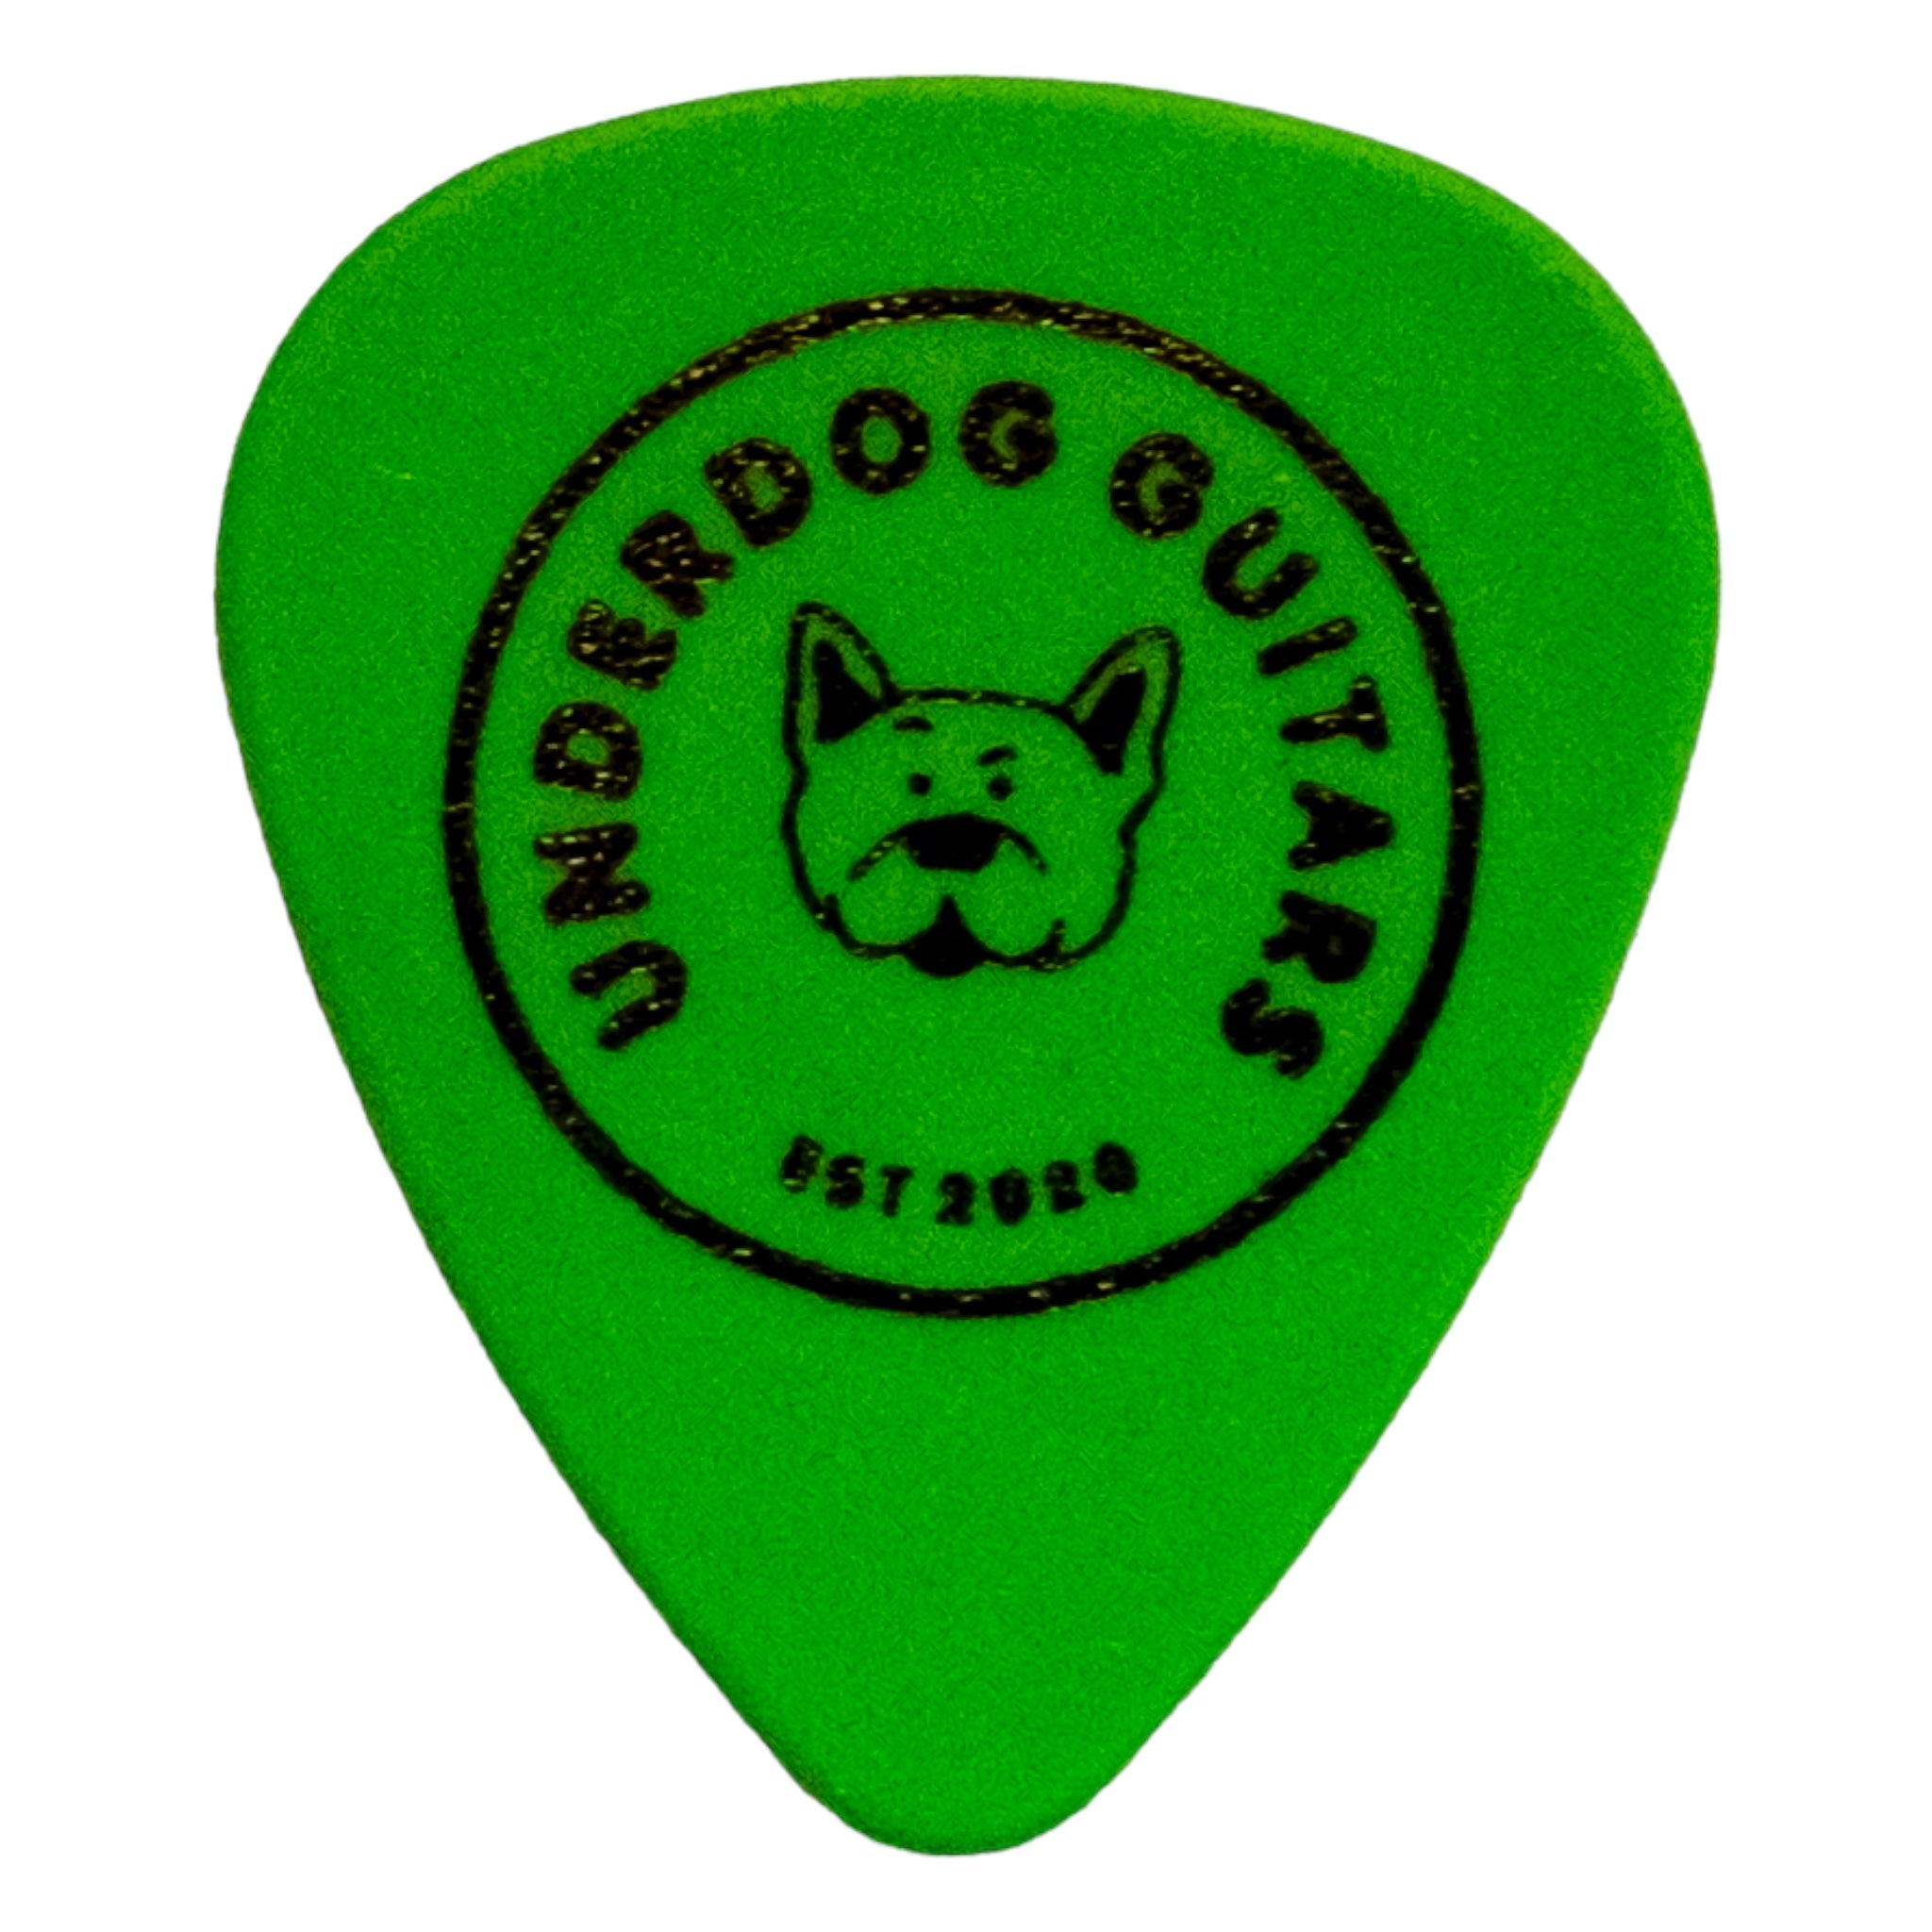 Jim Dunlop x Underdog Guitars Tortex Standard .88mm Guitar Pick